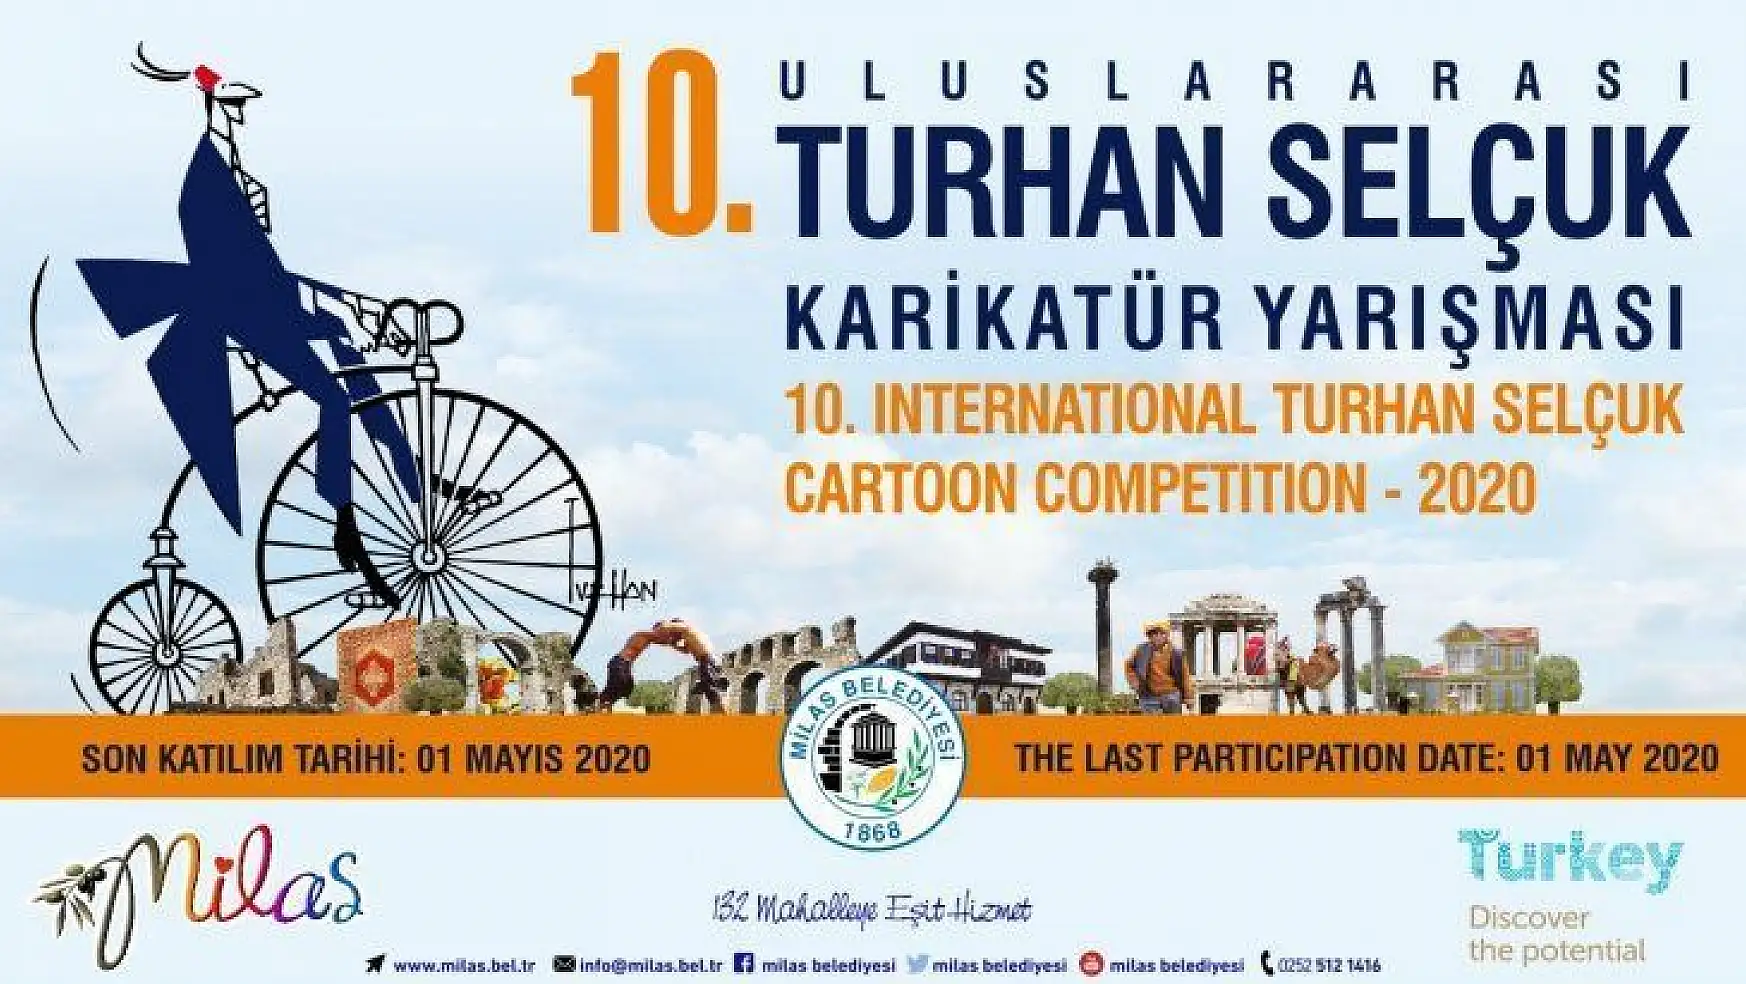 Uluslararası Turhan Selçuk Karikatür Yarışması başvuruları başladı